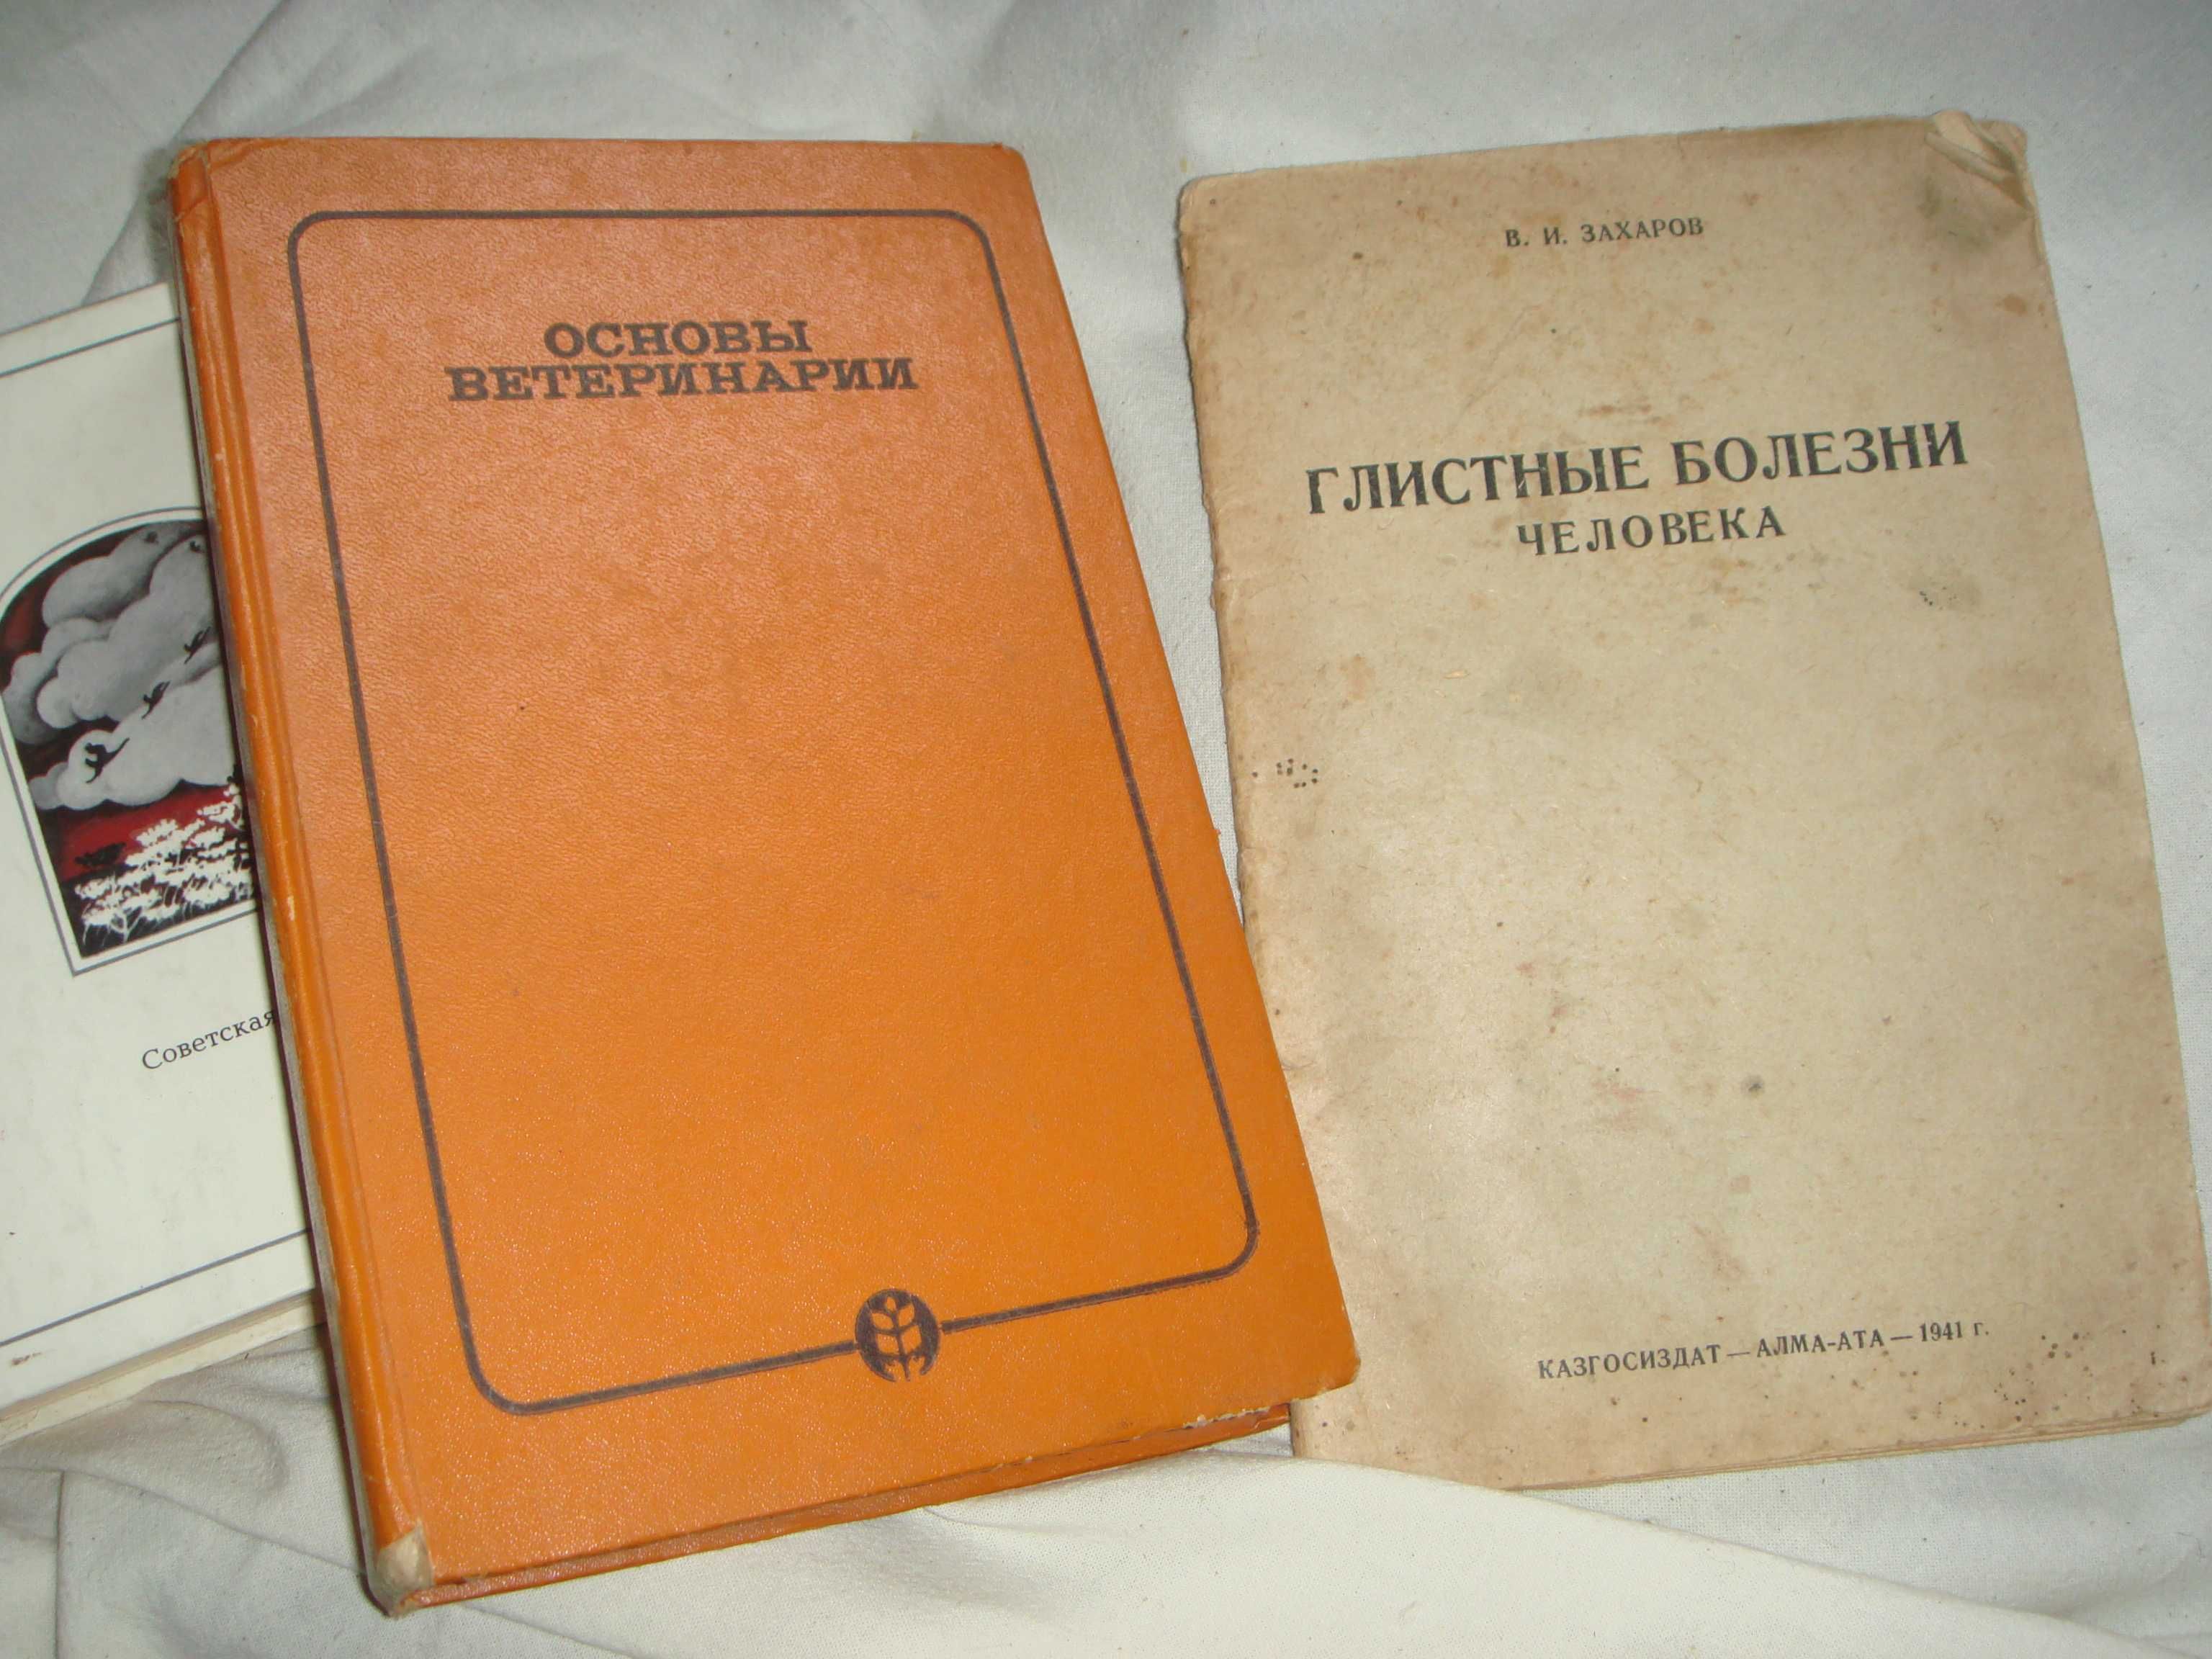 Книги Основа Ветеринарии 1970г.и 1953 И Глистные Болезни  1941г